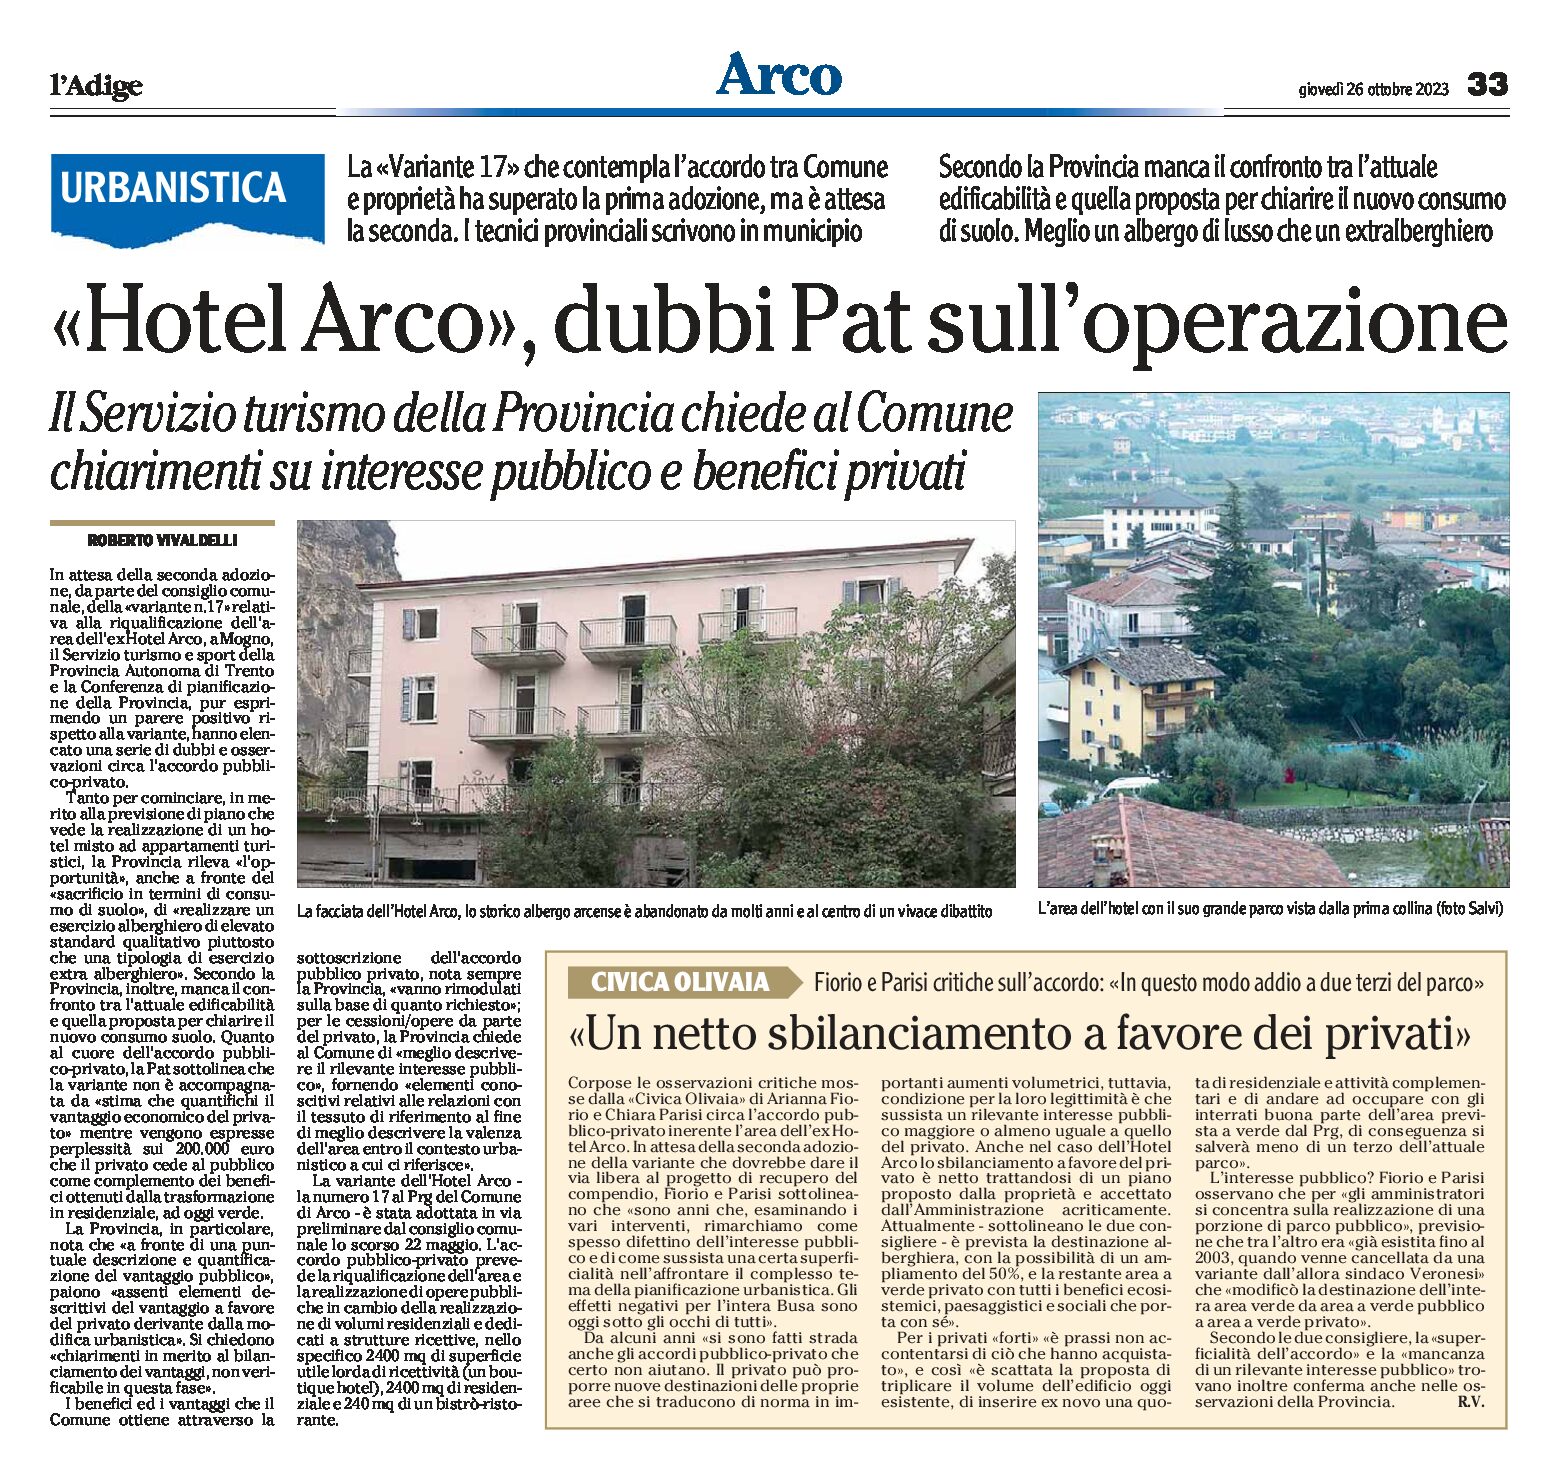 Arco: Hotel Arco, dubbi Pat sull’operazione